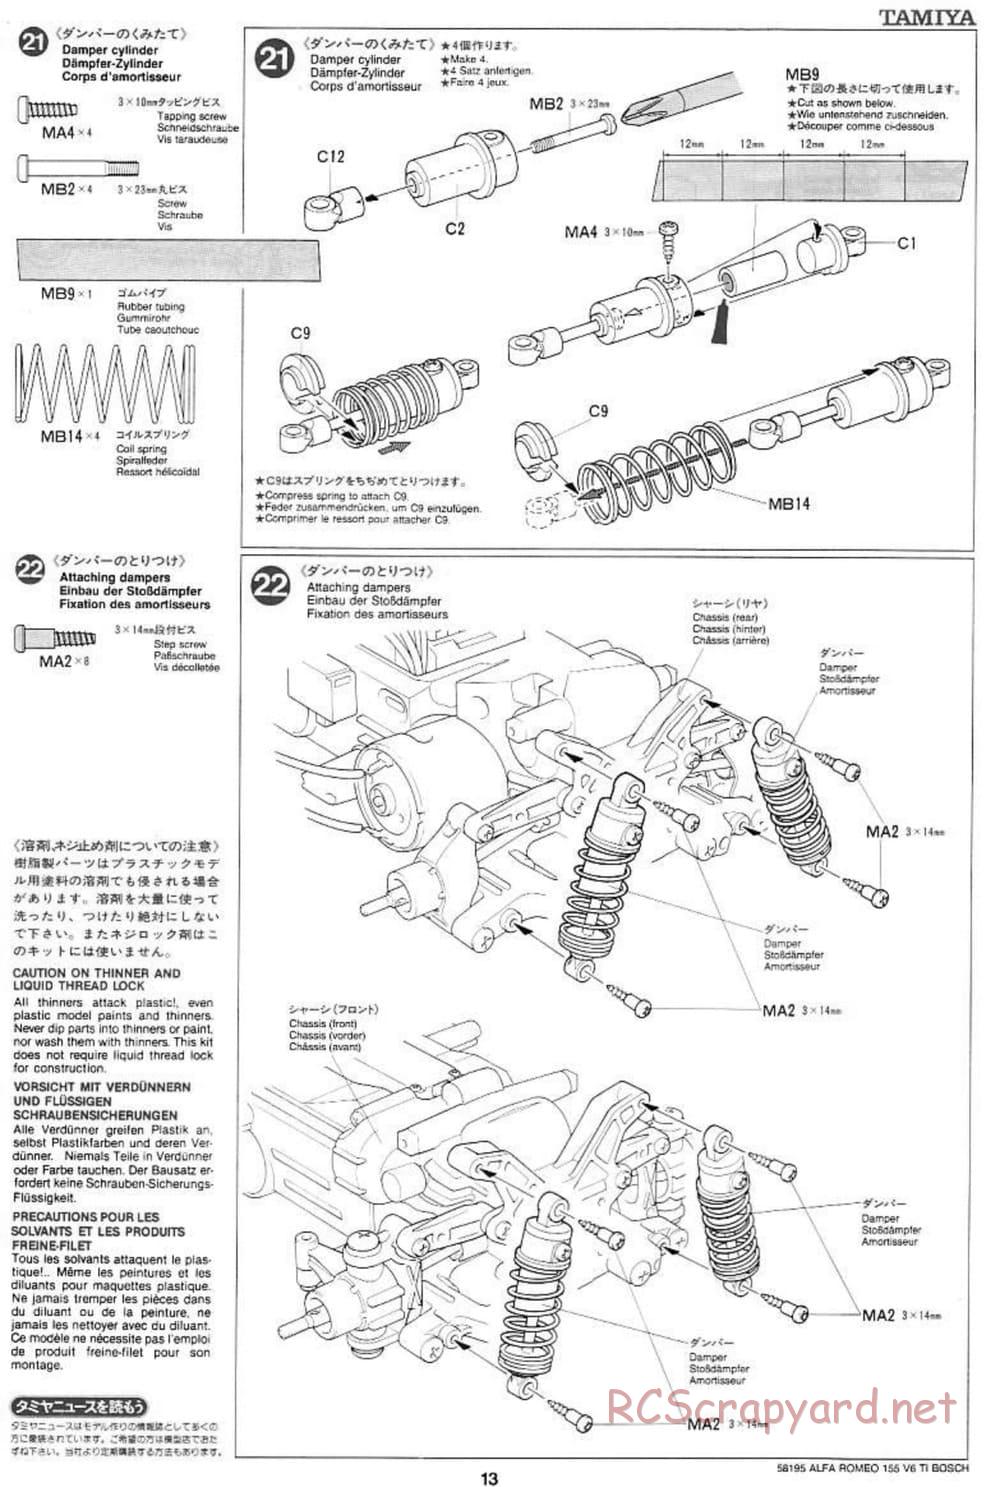 Tamiya - Alfa Romeo 155 V6 TI BOSCH - TL-01 Chassis - Manual - Page 13